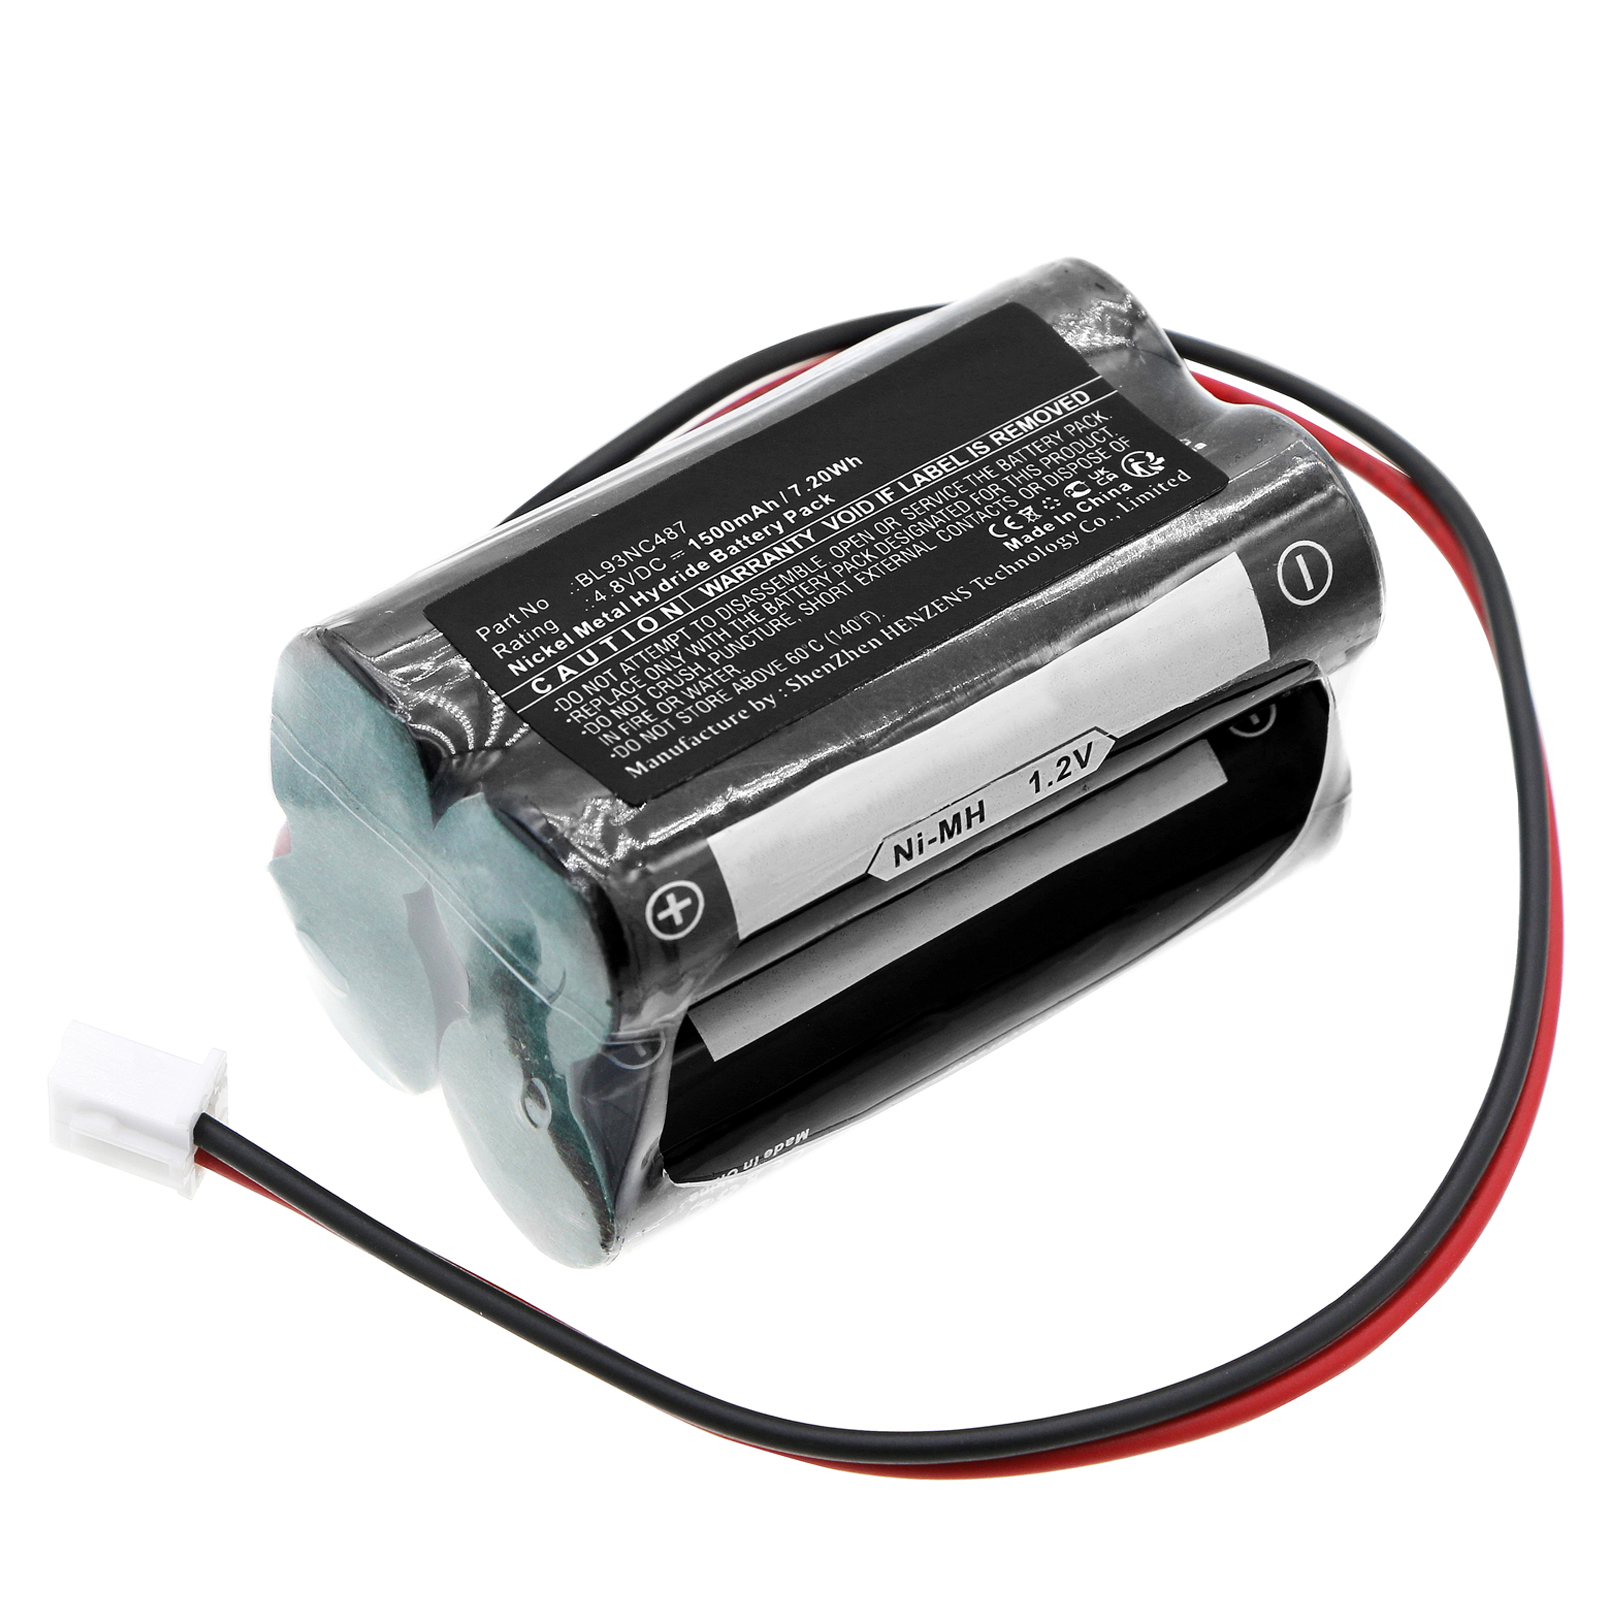 Batteries for SimkarEmergency Lighting